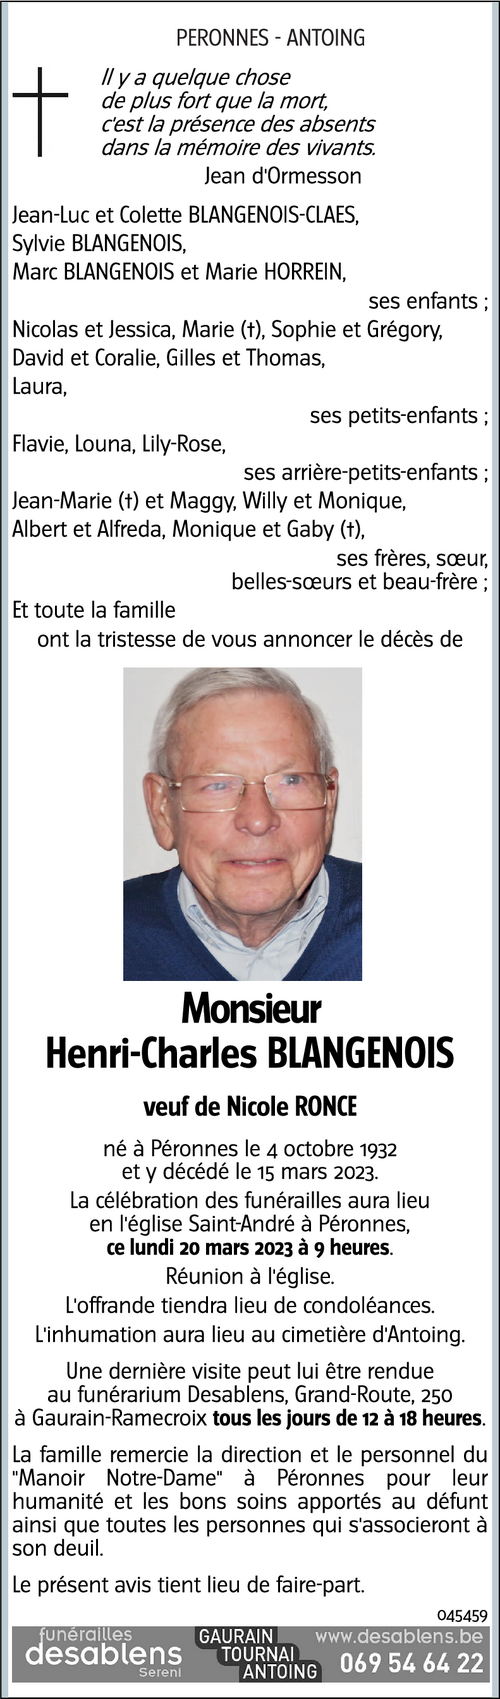 Henri-Charles BLANGENOIS